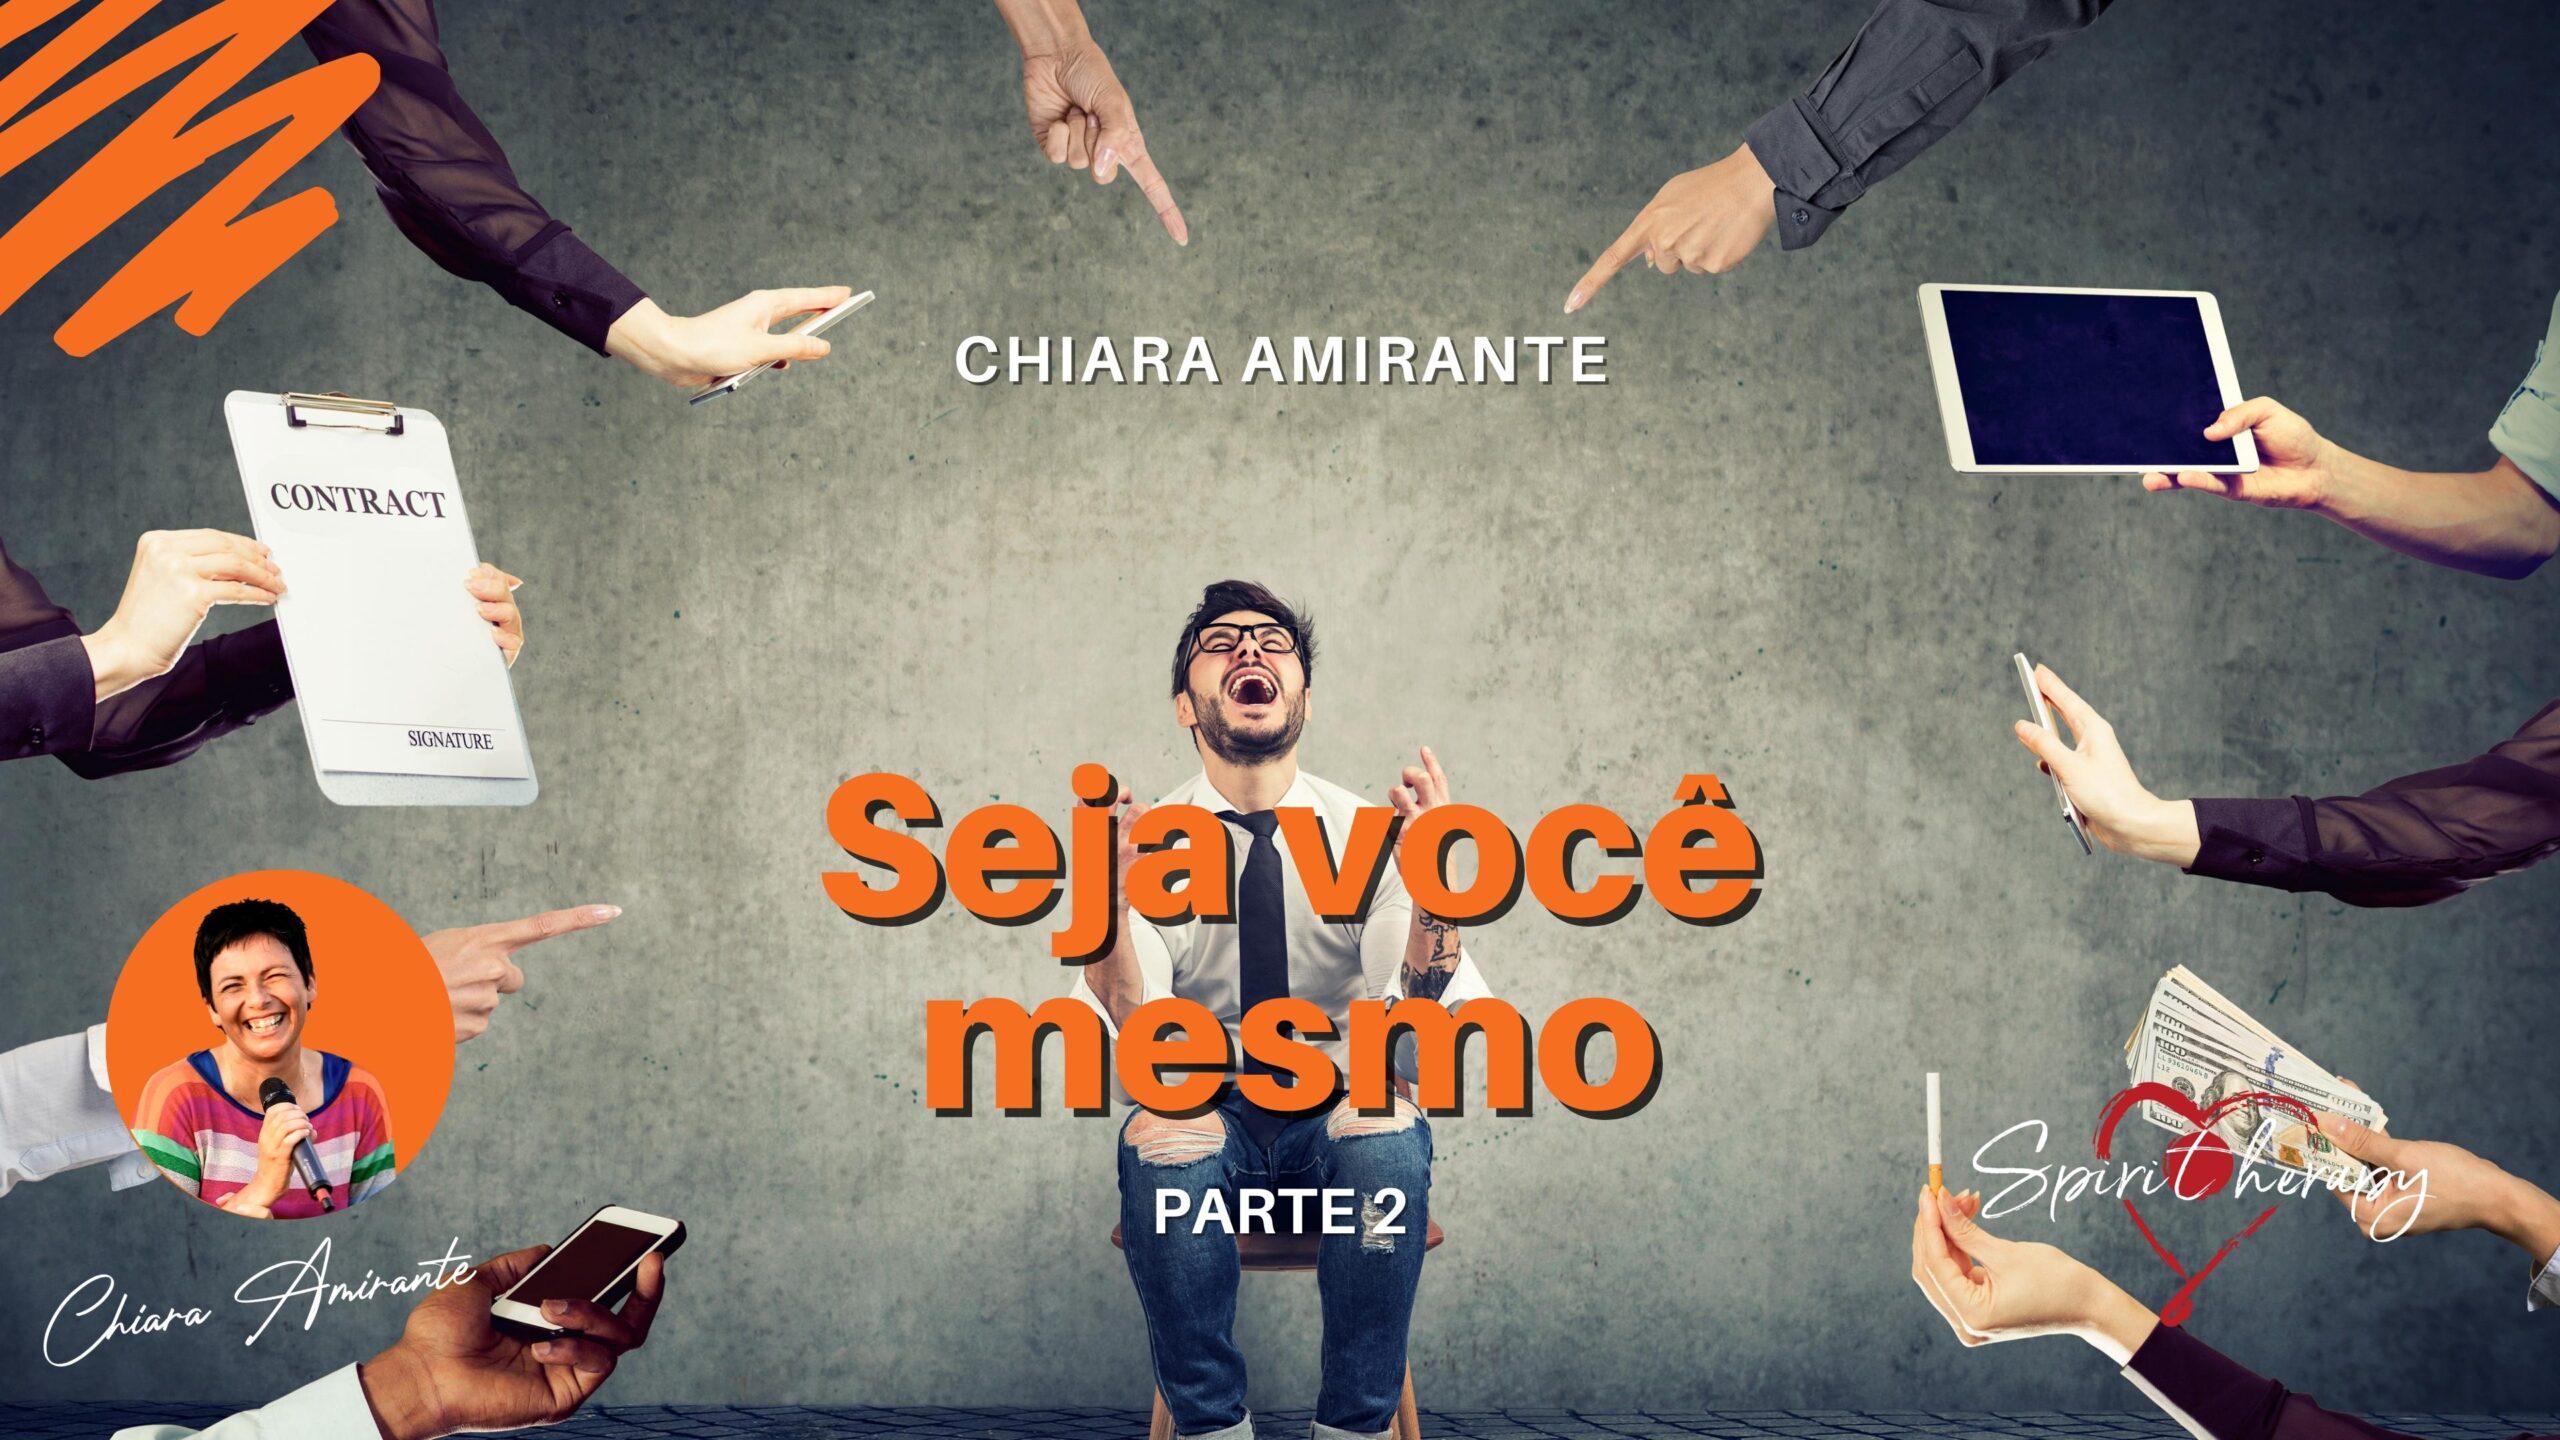 Seja você mesmo (2) - Chiara Amirante